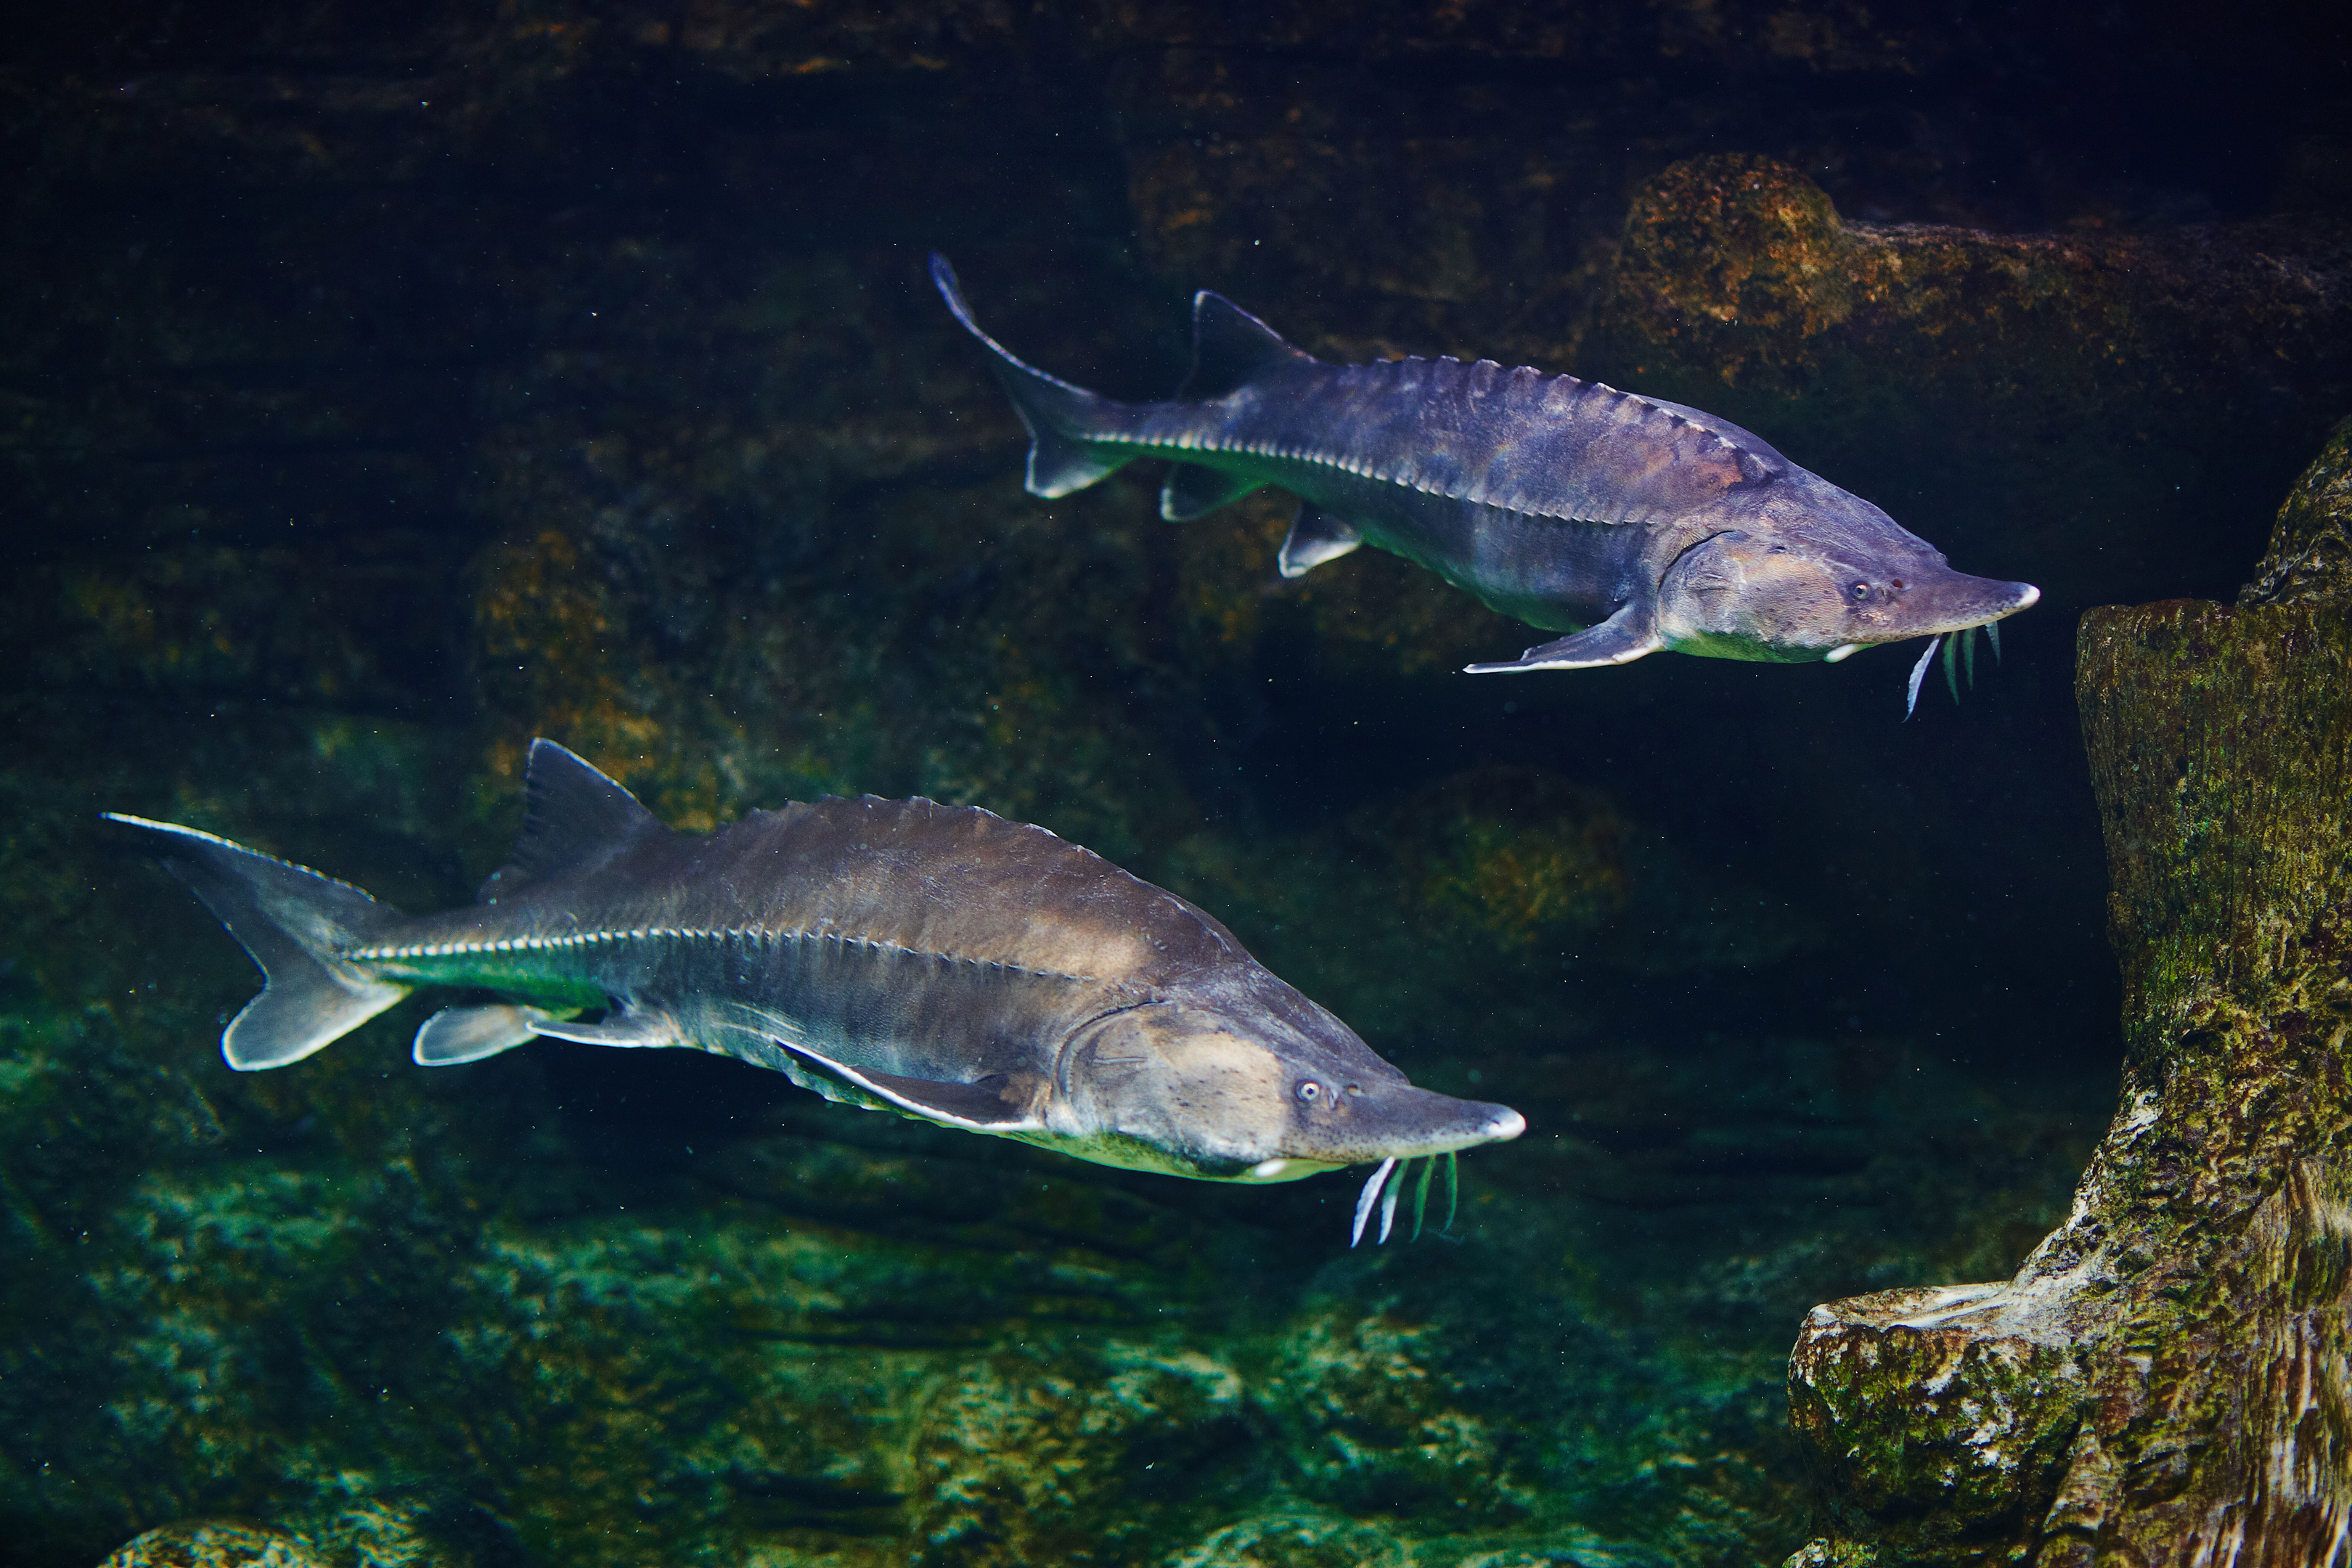 Alive sturgeon in an aquarium.